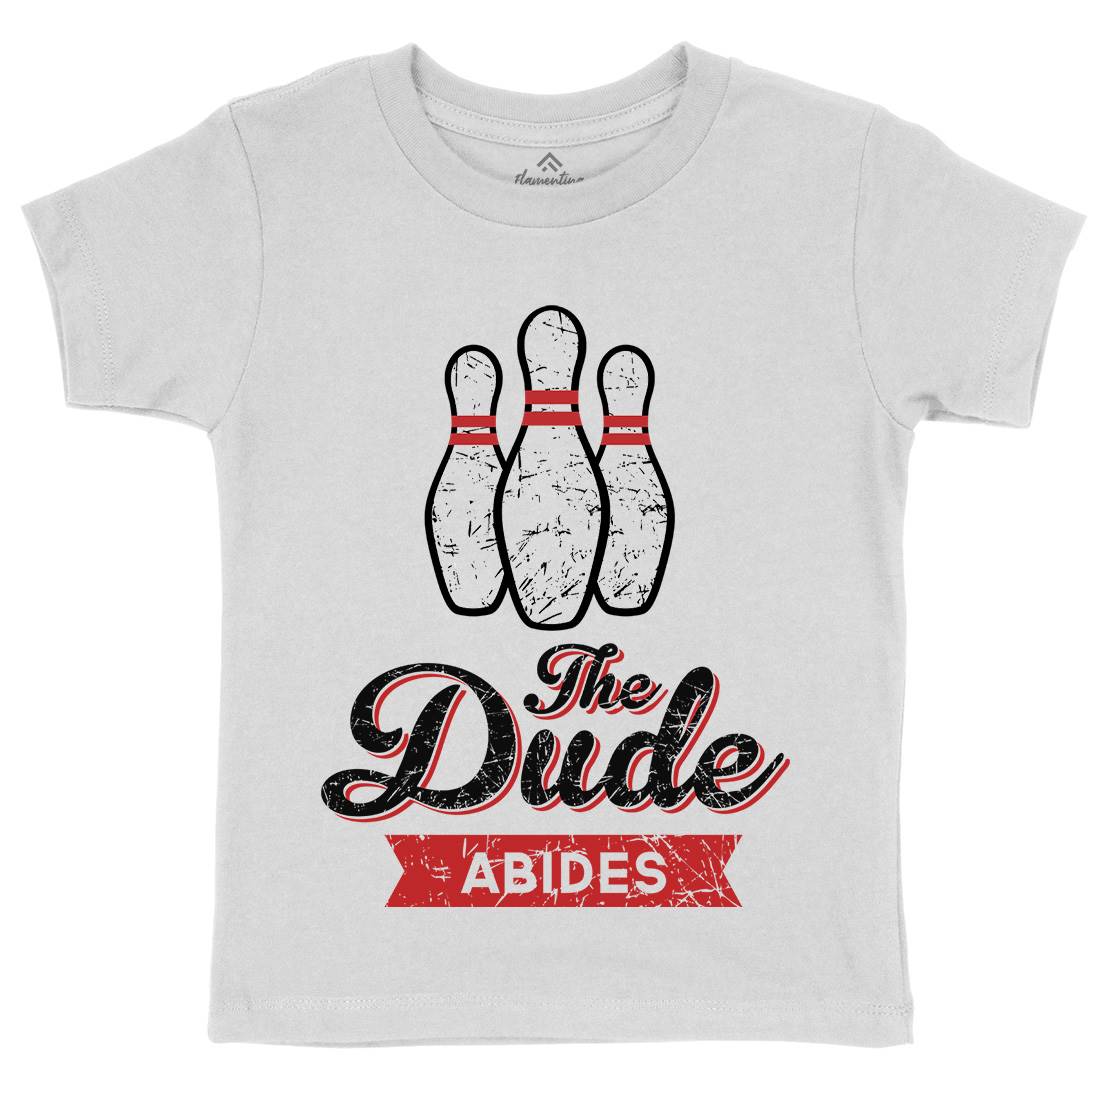 The Dude Kids Organic Crew Neck T-Shirt Sport D361